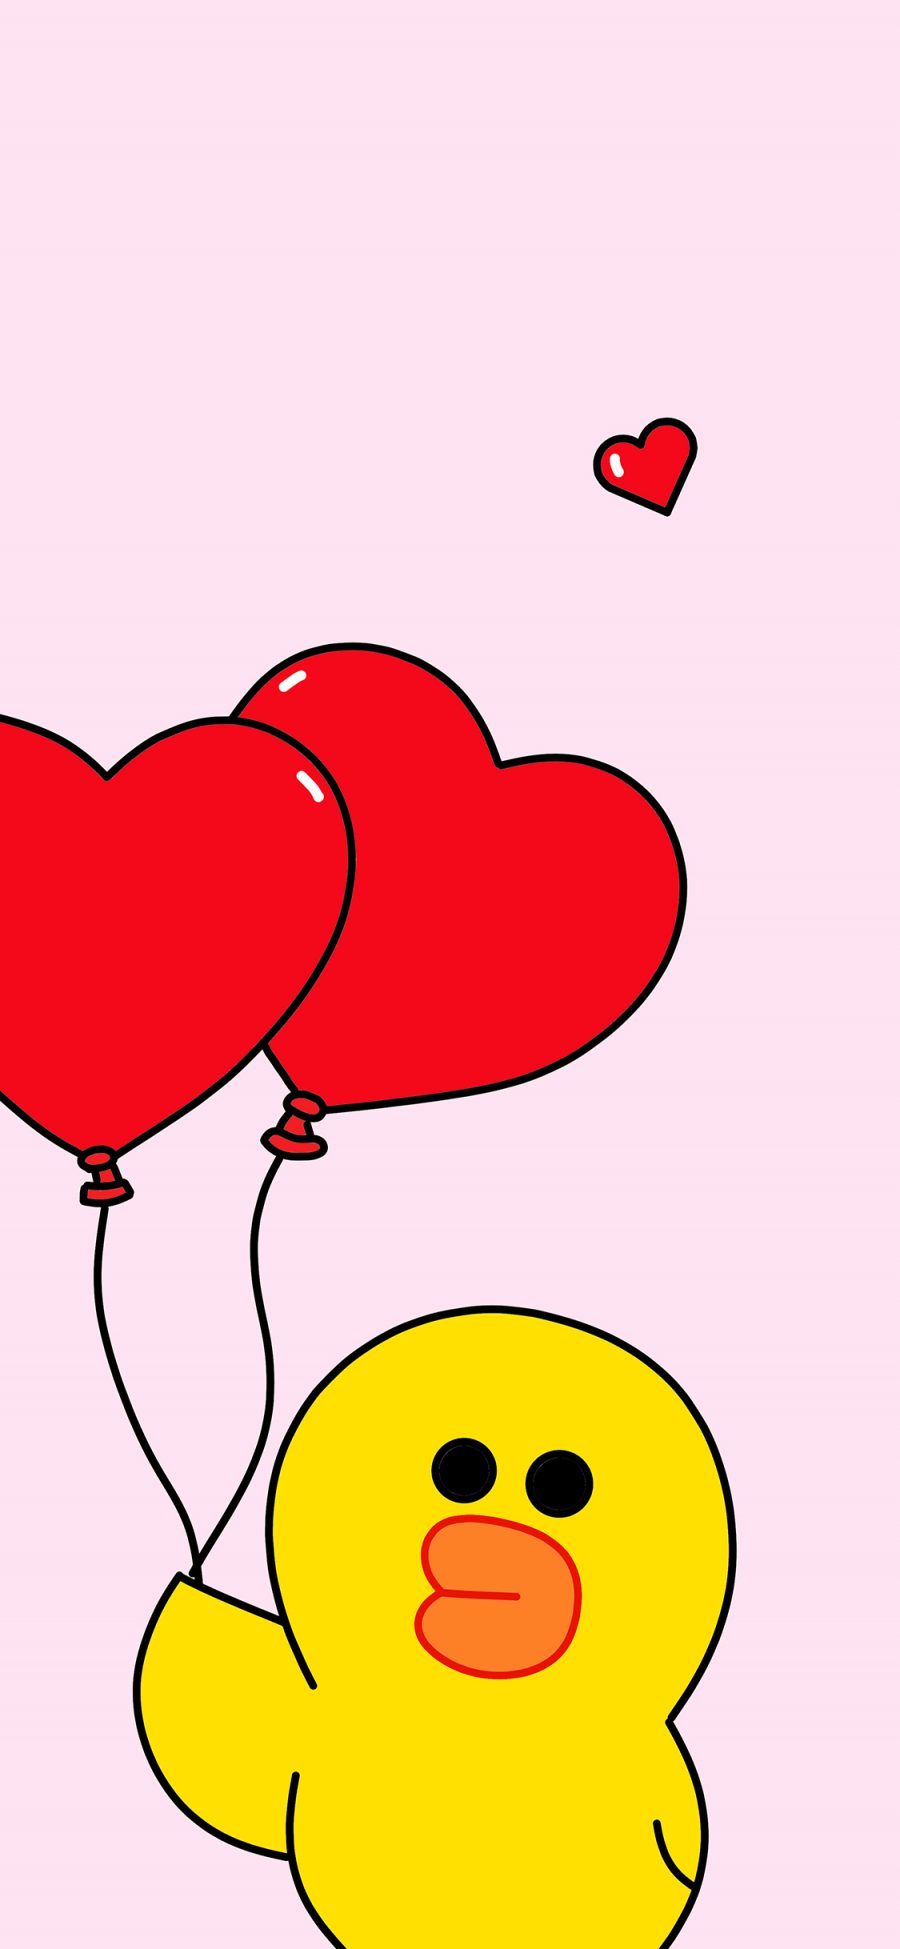 [2436×1125]萨莉鸡 卡通 爱心气球 linefriends 粉色 苹果手机动漫壁纸图片